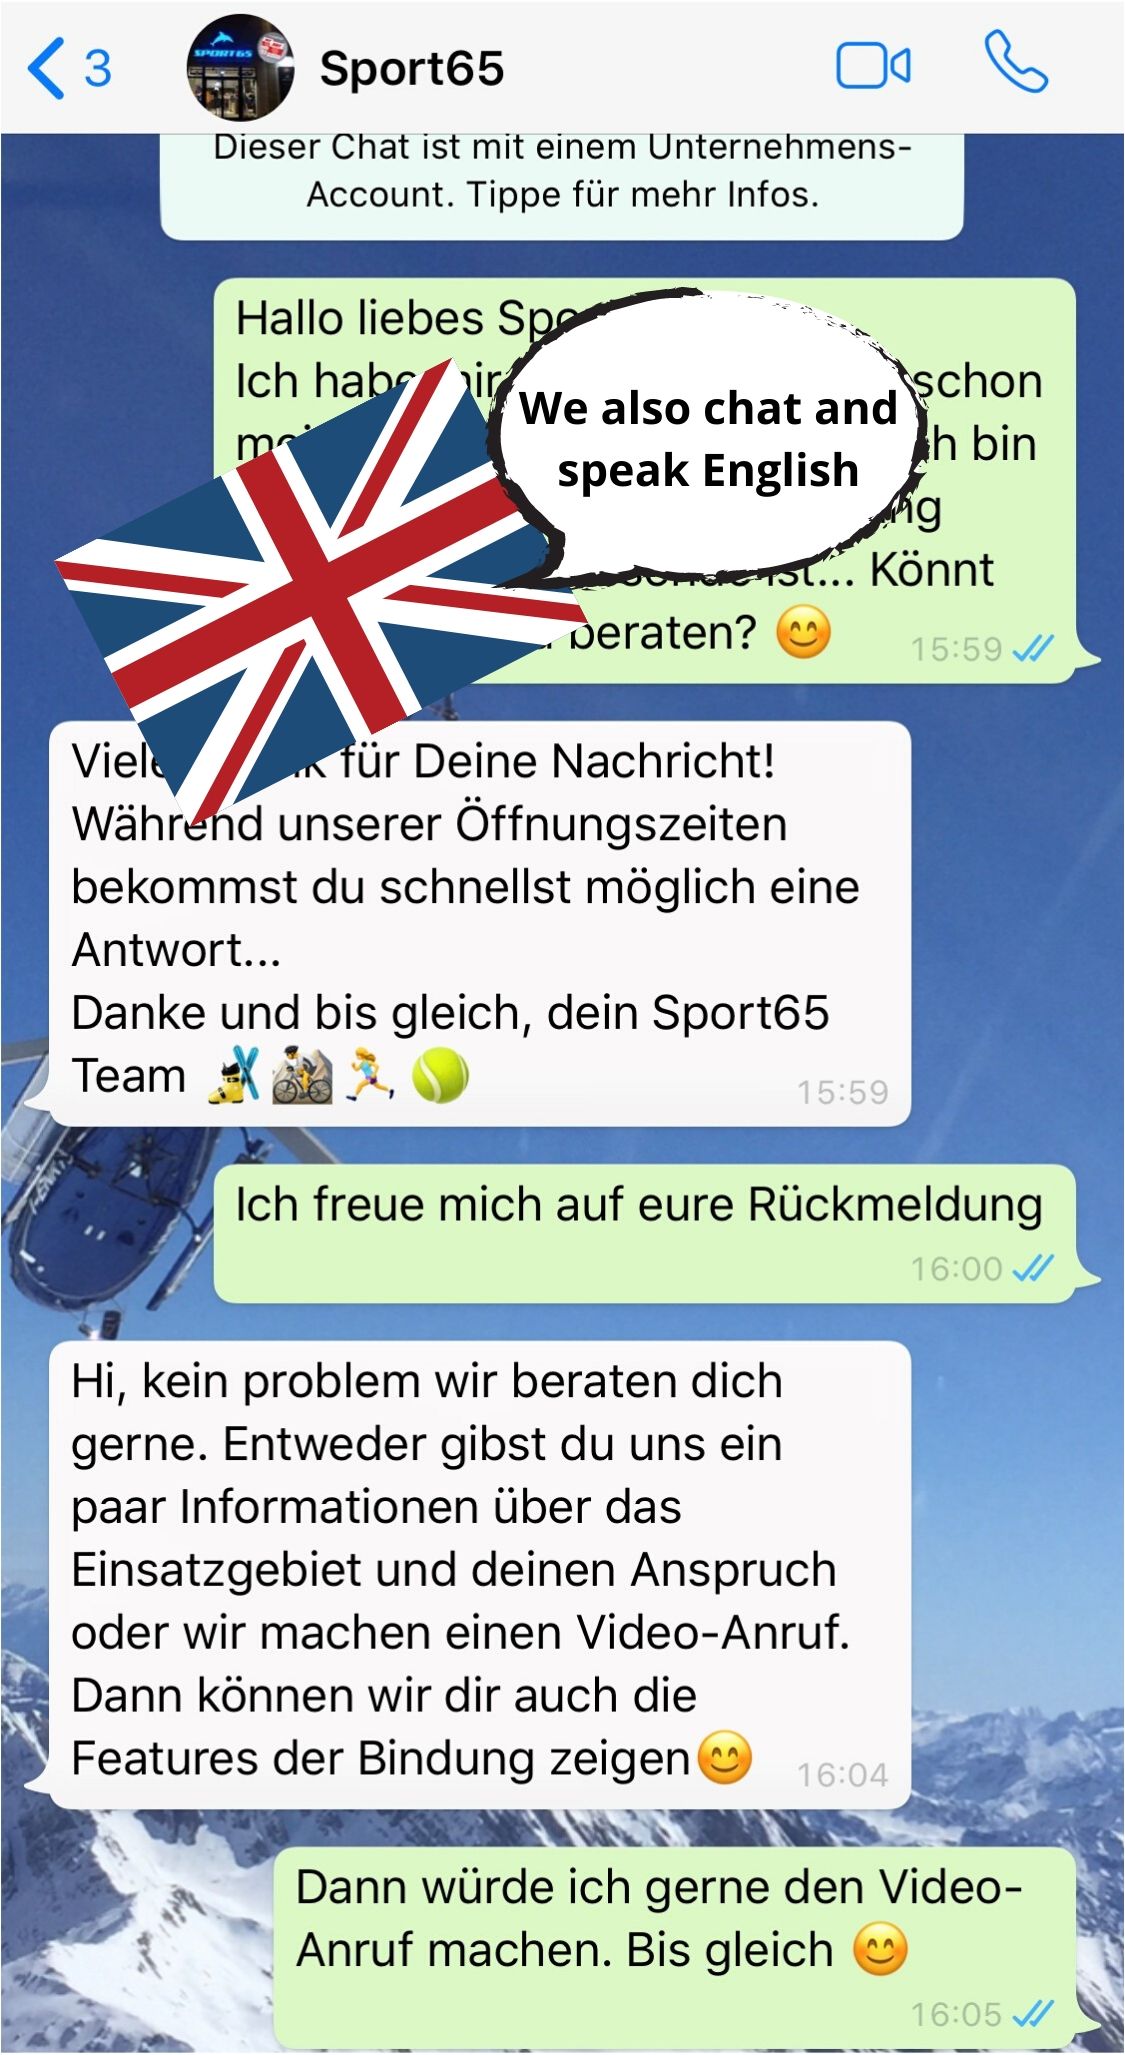 Text whatsapp liebes Porzellanhochzeit Whatsapp